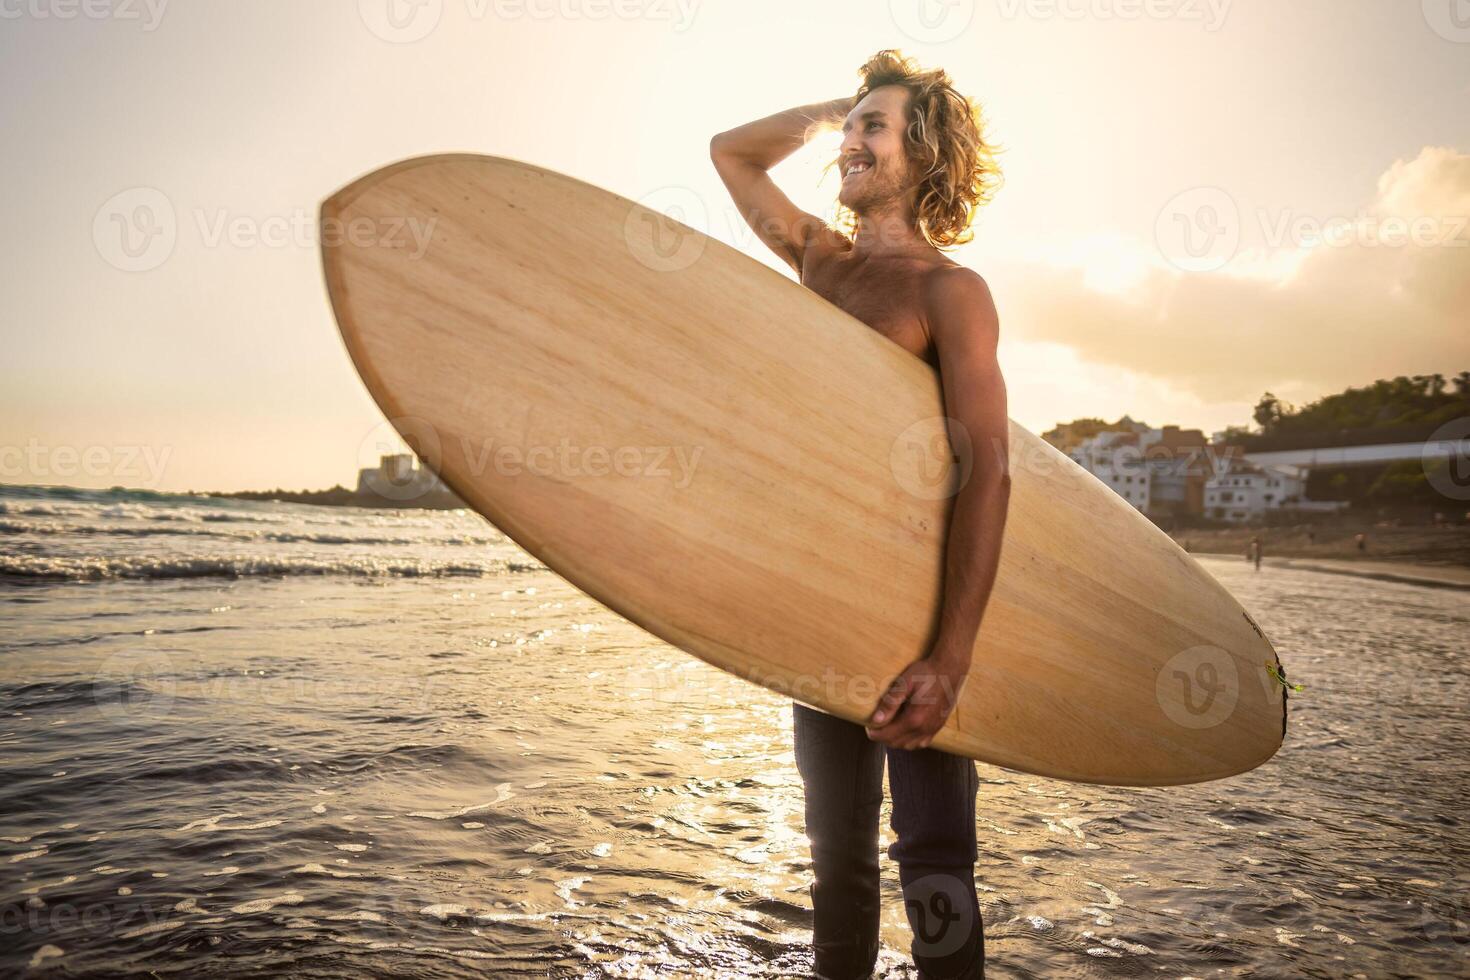 jong surfer hebben pret genieten van een surfen dag Bij zonsondergang tijd - extreem sport levensstijl mensen concept foto